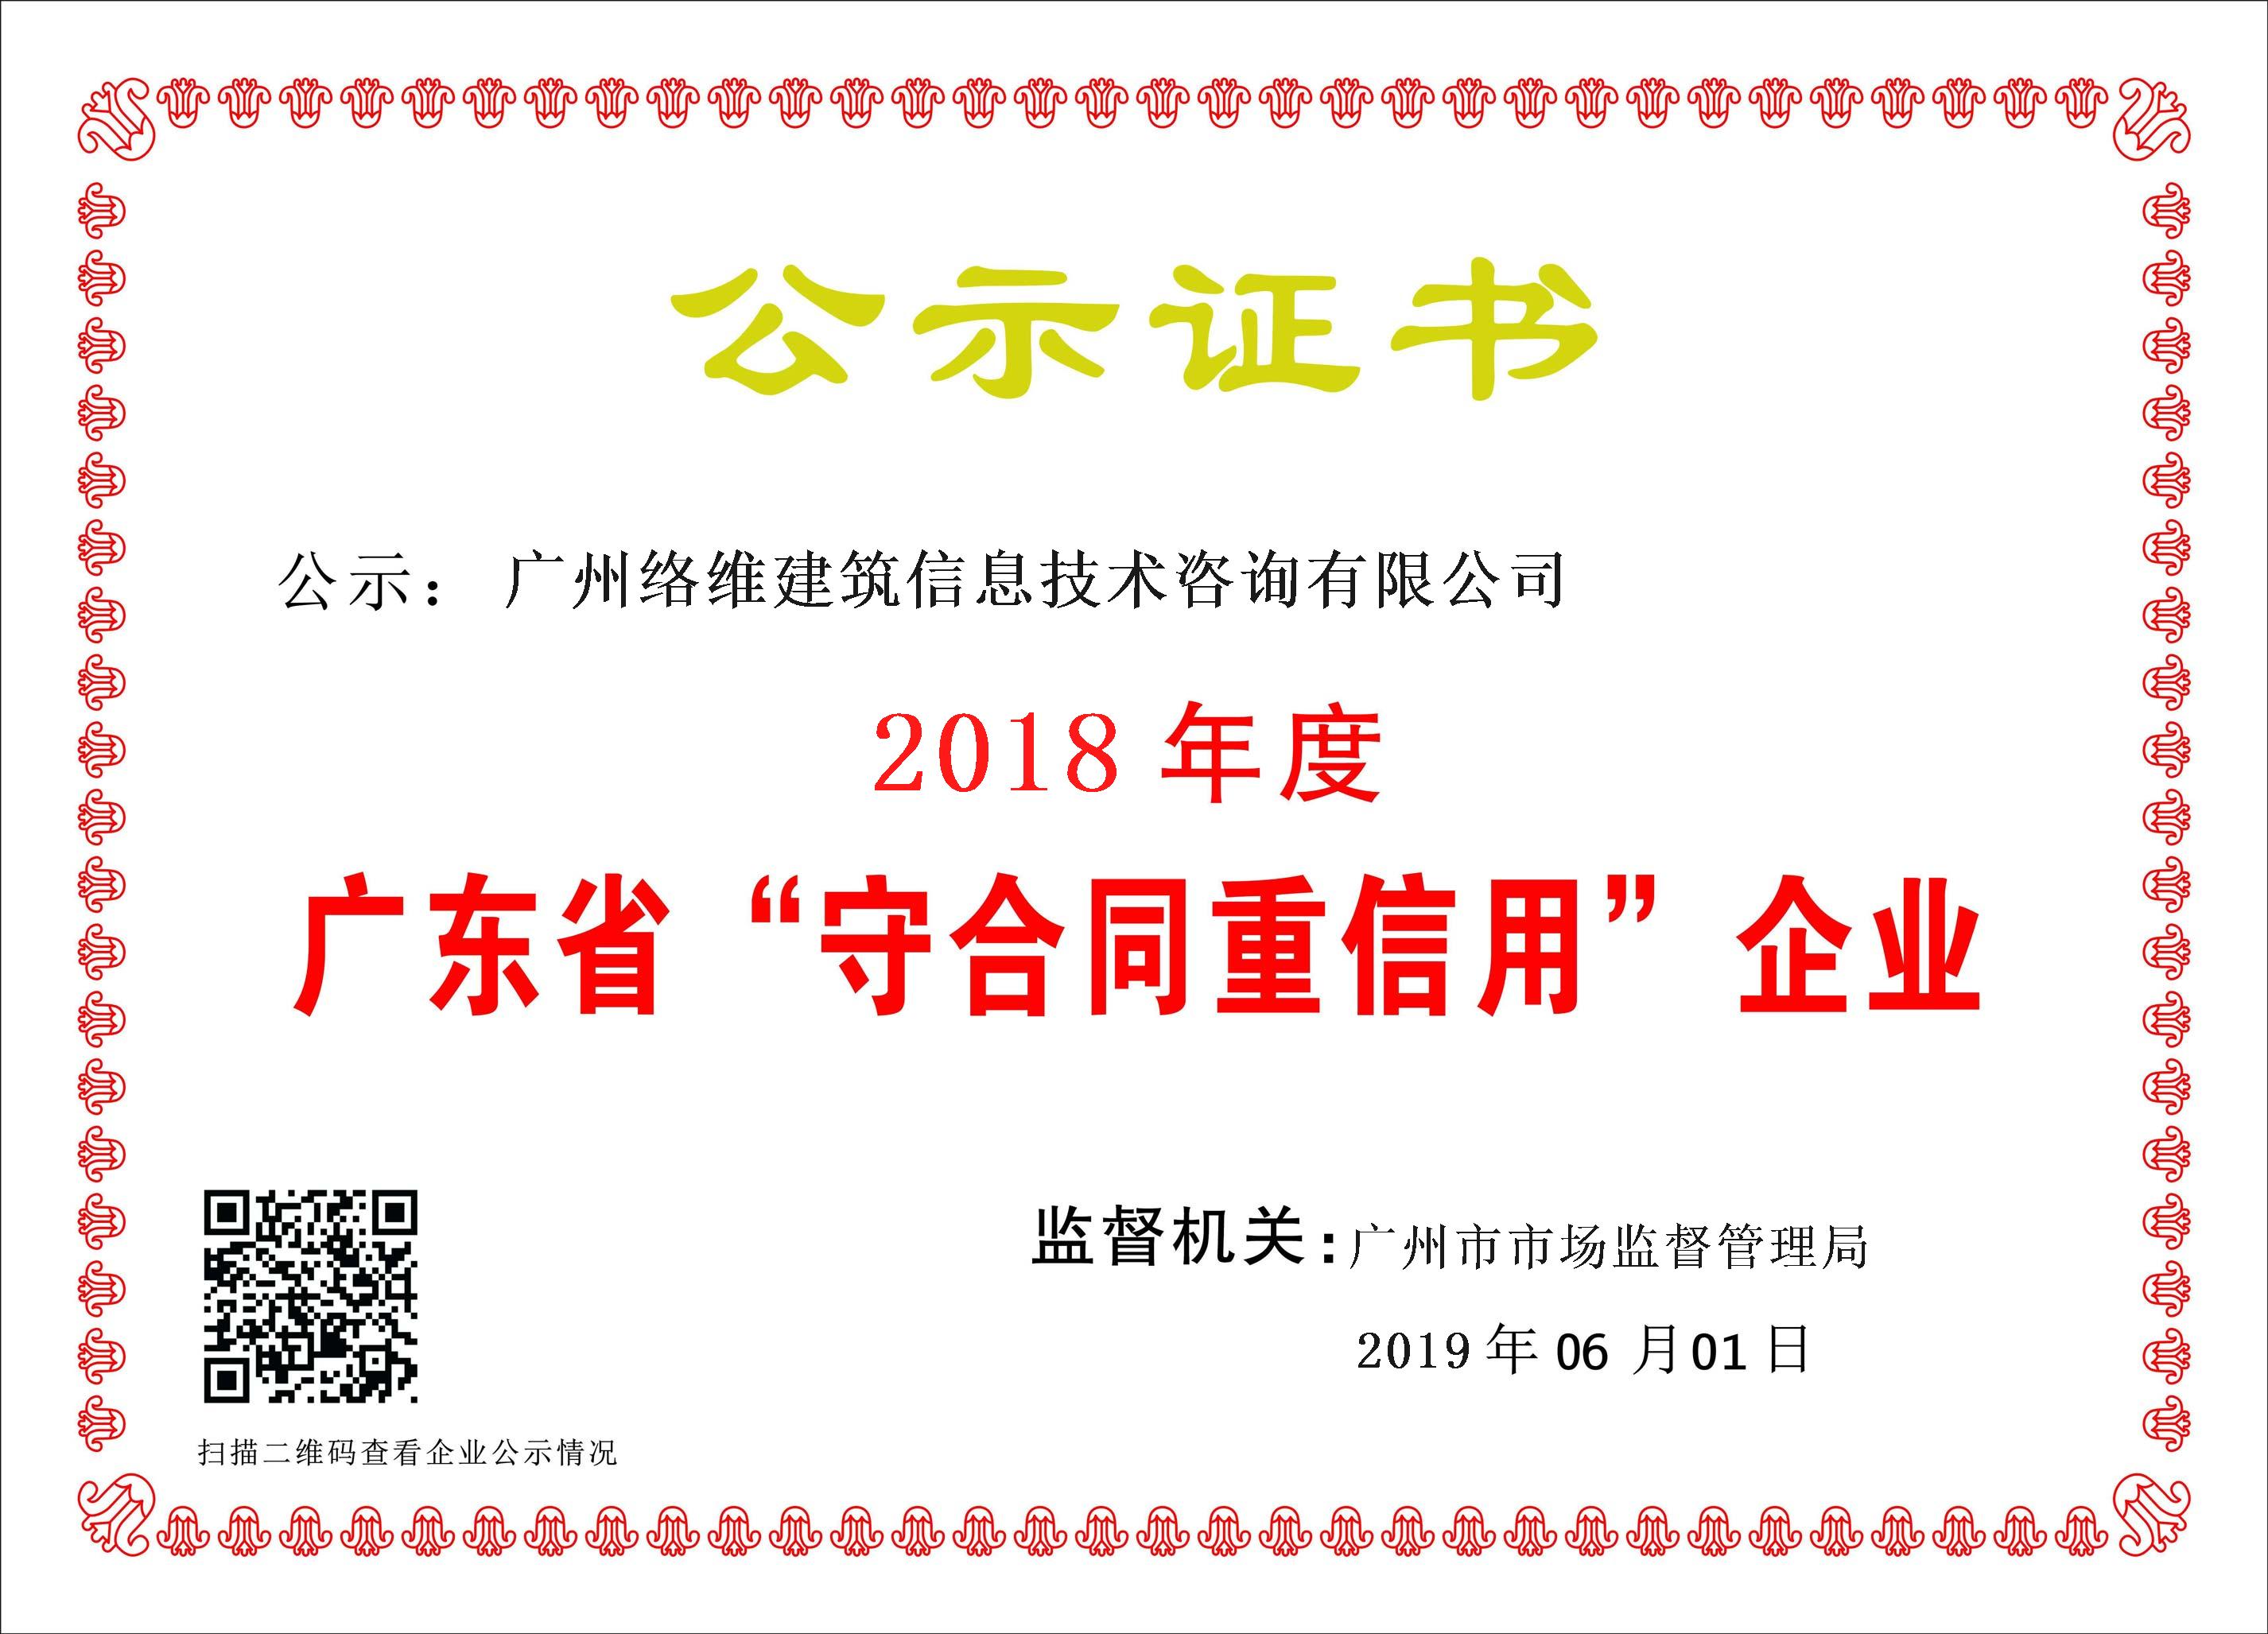 热烈祝贺广州络维获得“守合同重信用企业”荣誉称号